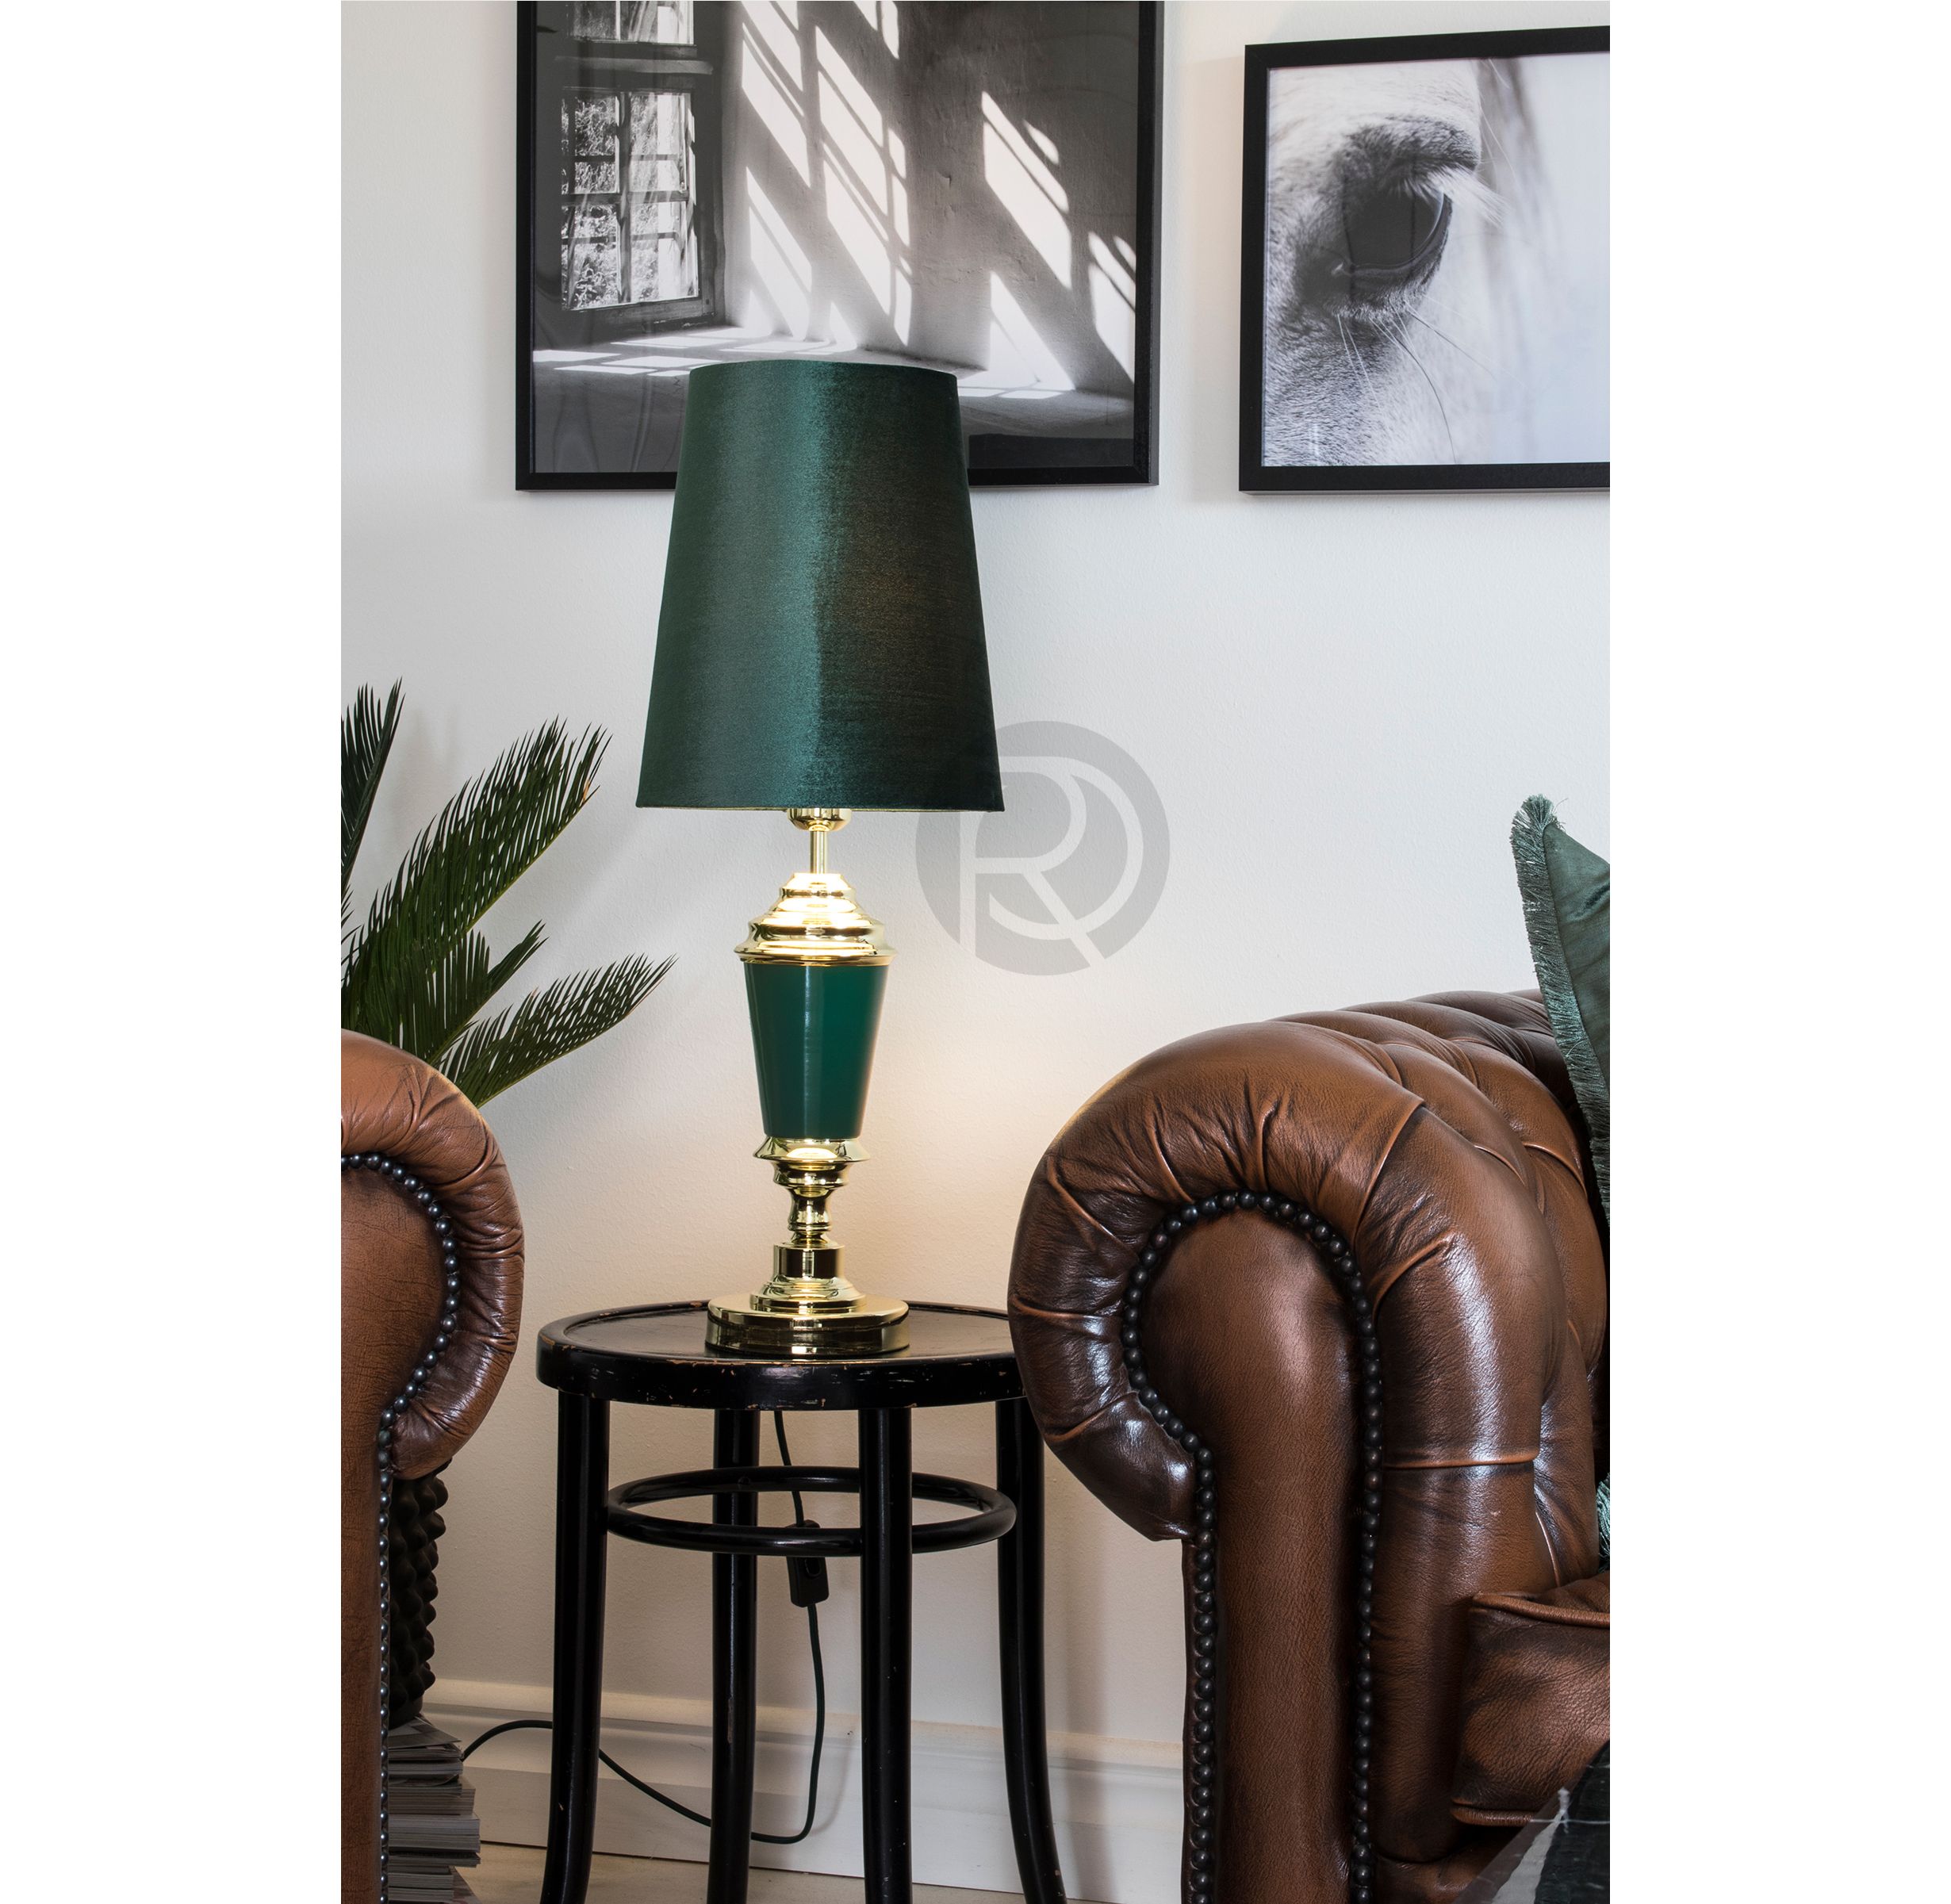 WALLENBERG table lamp by Globen